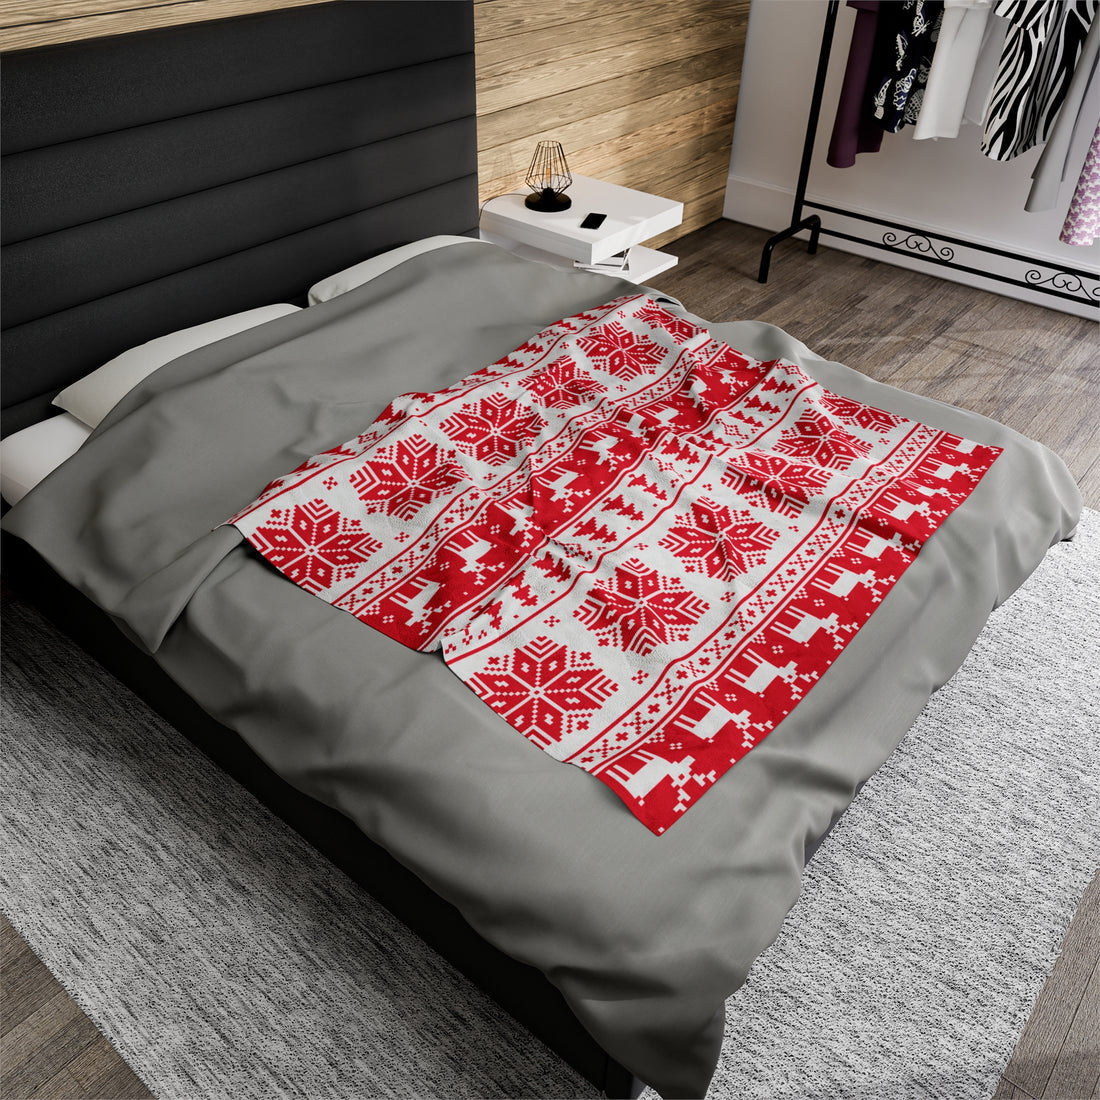 Velveteen Plush Christmas Blanket